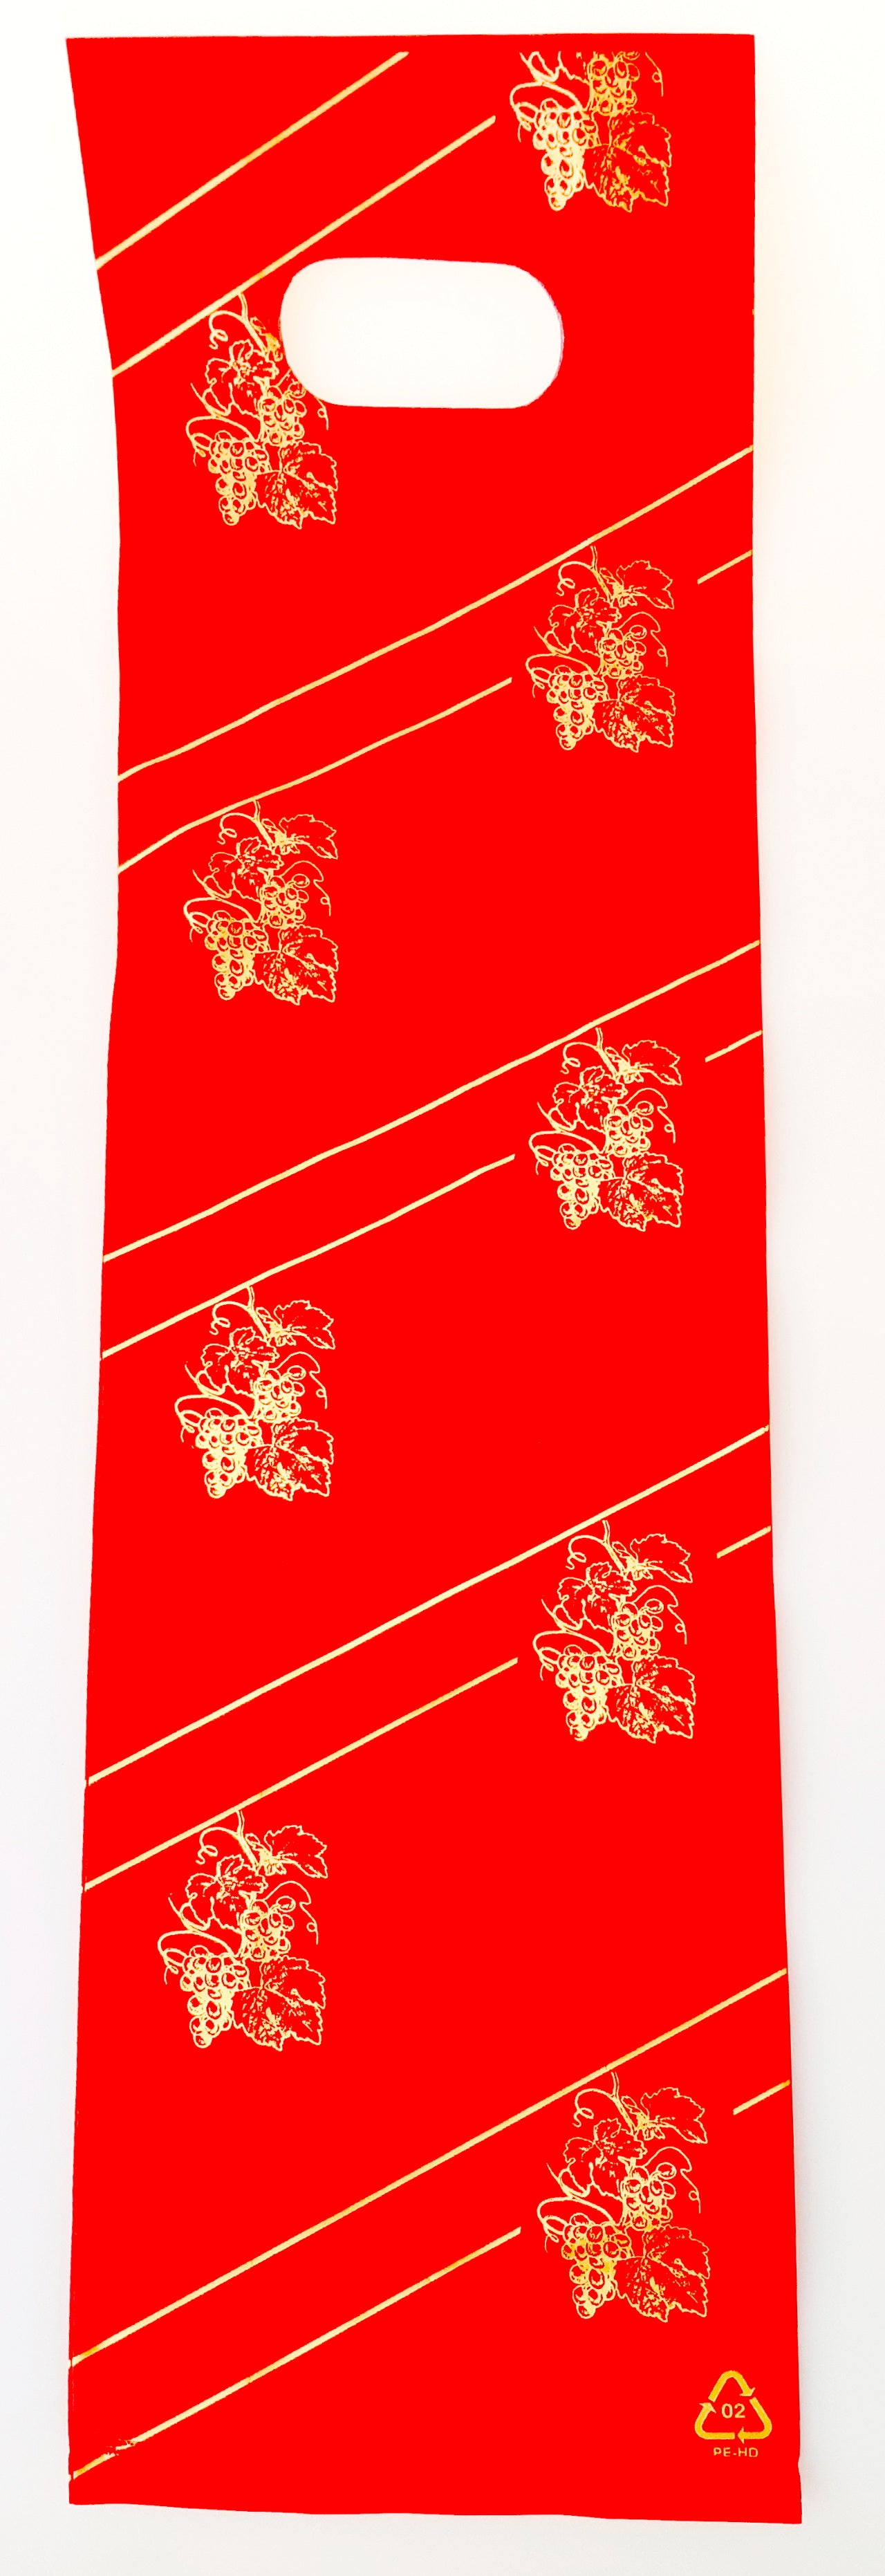 DittaDisplay Retail solutions sac plastique poignée découpée rouge or motif vigne plastic bag with cut-out handle red gold vine motif Plastiktüte mit ausgeschnittenem Henkel rot gold Rankenmotiv